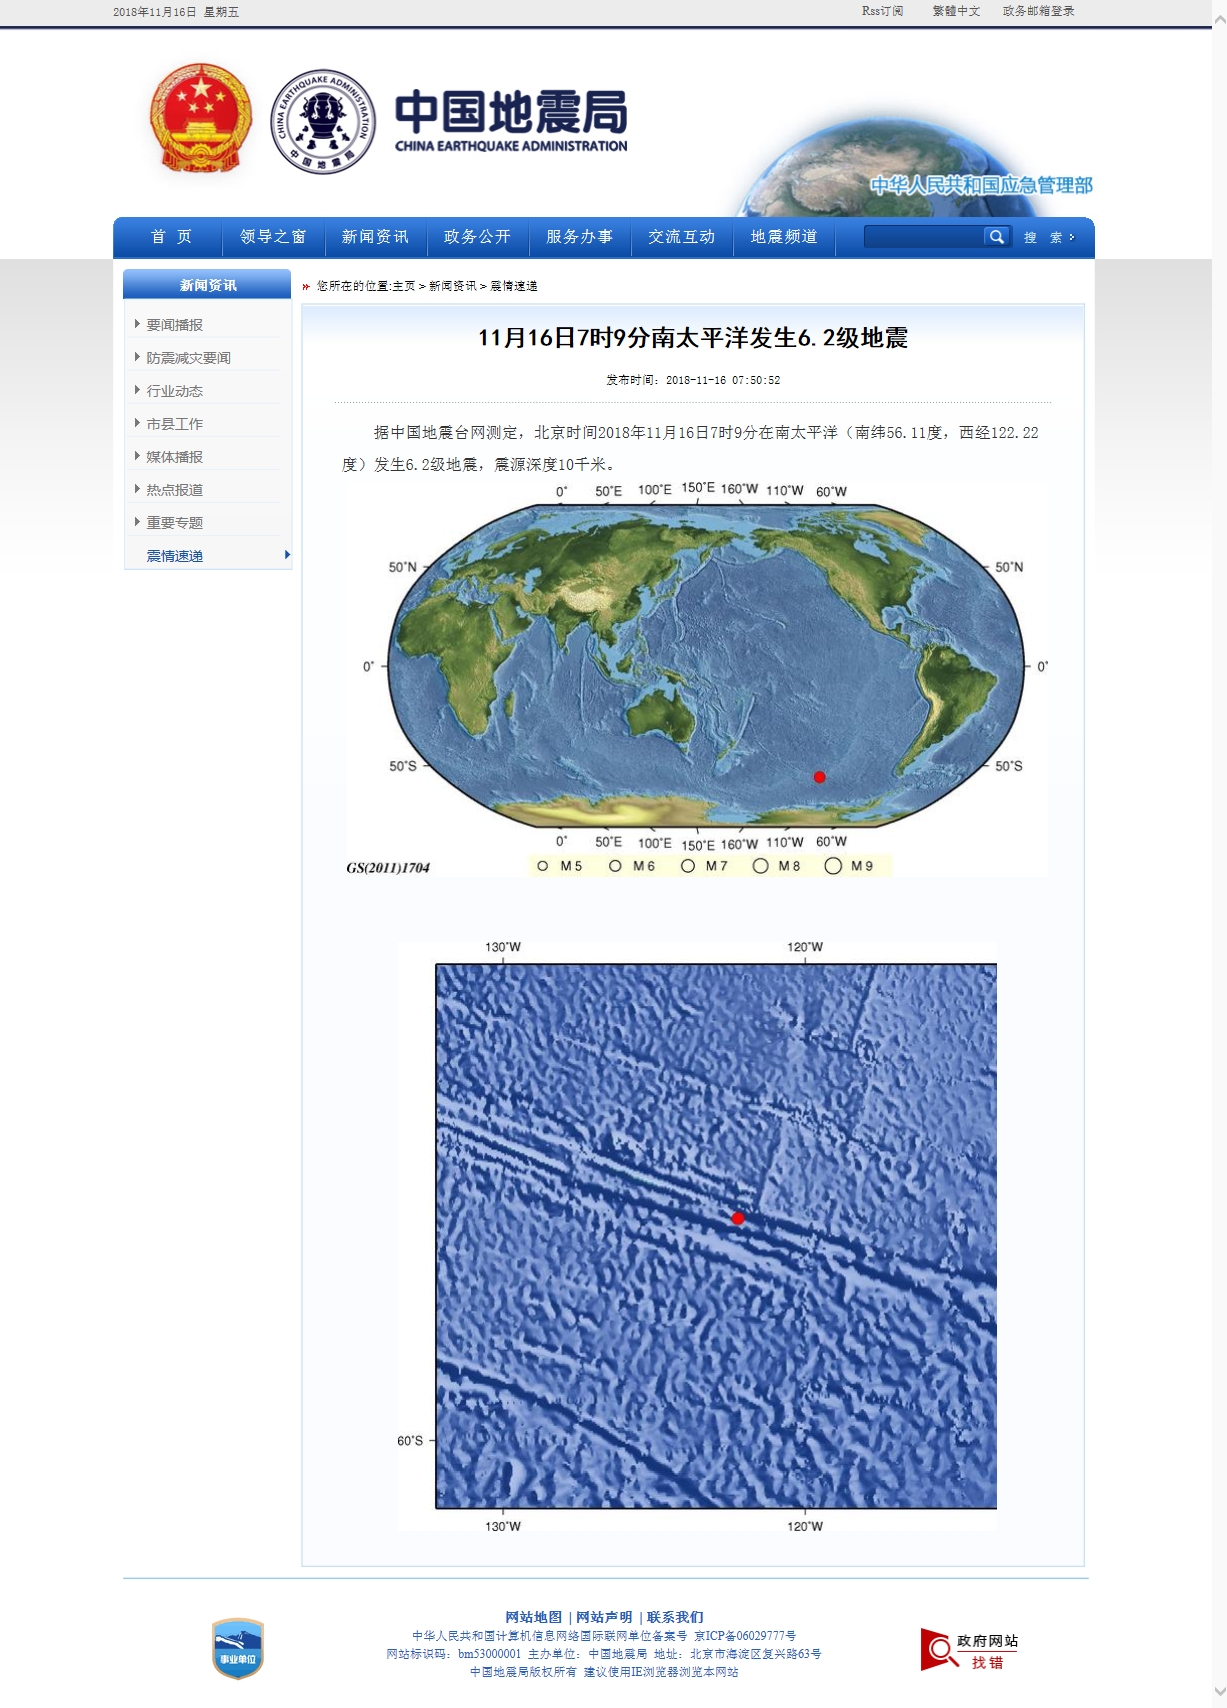 11月16日7时9分南太平洋发生6.2级地震.jpg